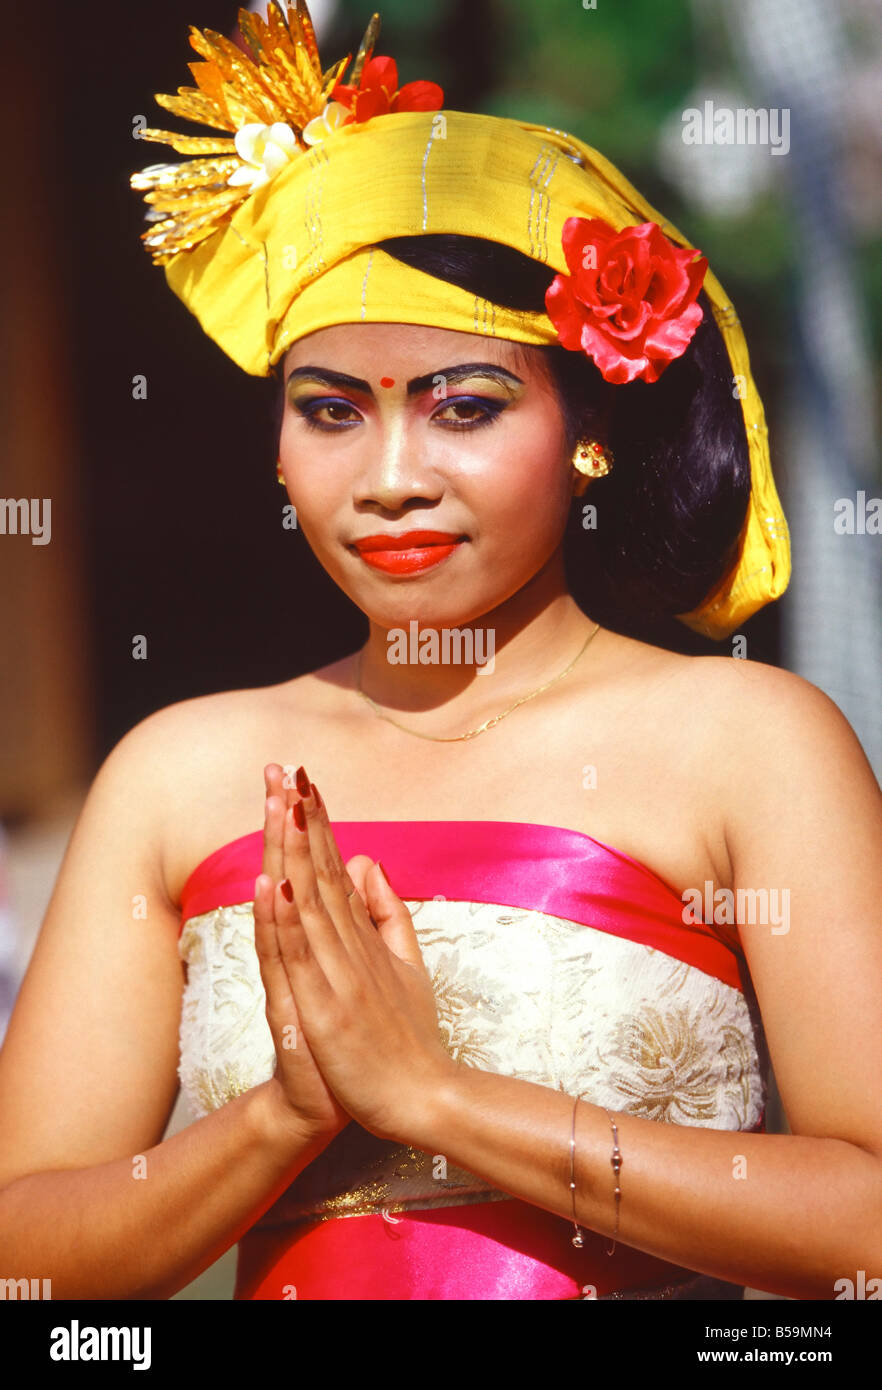 Porträts von einer jungen Frau im traditionellen Tanz Kostüm, Bali, Indonesien, Südostasien Stockfoto